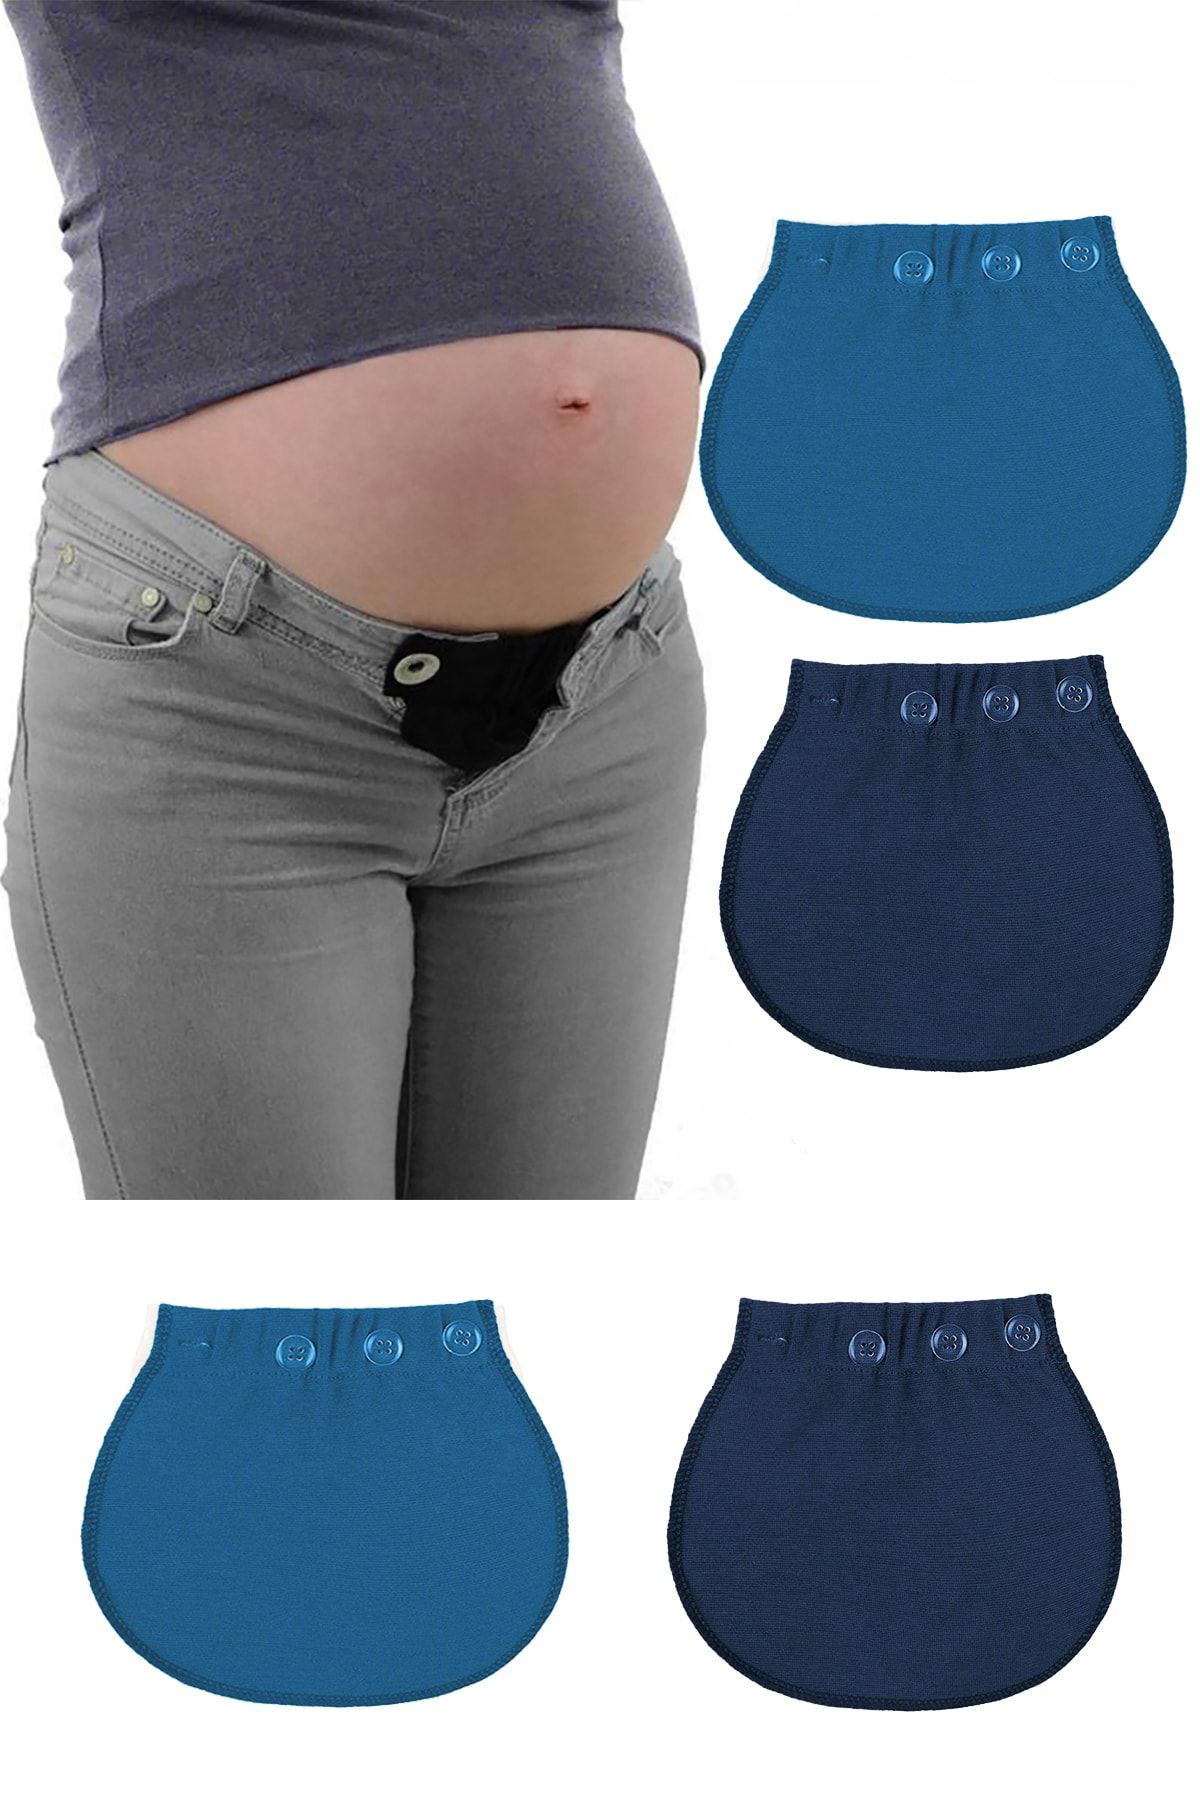 Pimobile Hamile Pantolonu Bel Genişletici-kadınlar Için Pantolon Genişletici Lacivert-mavi